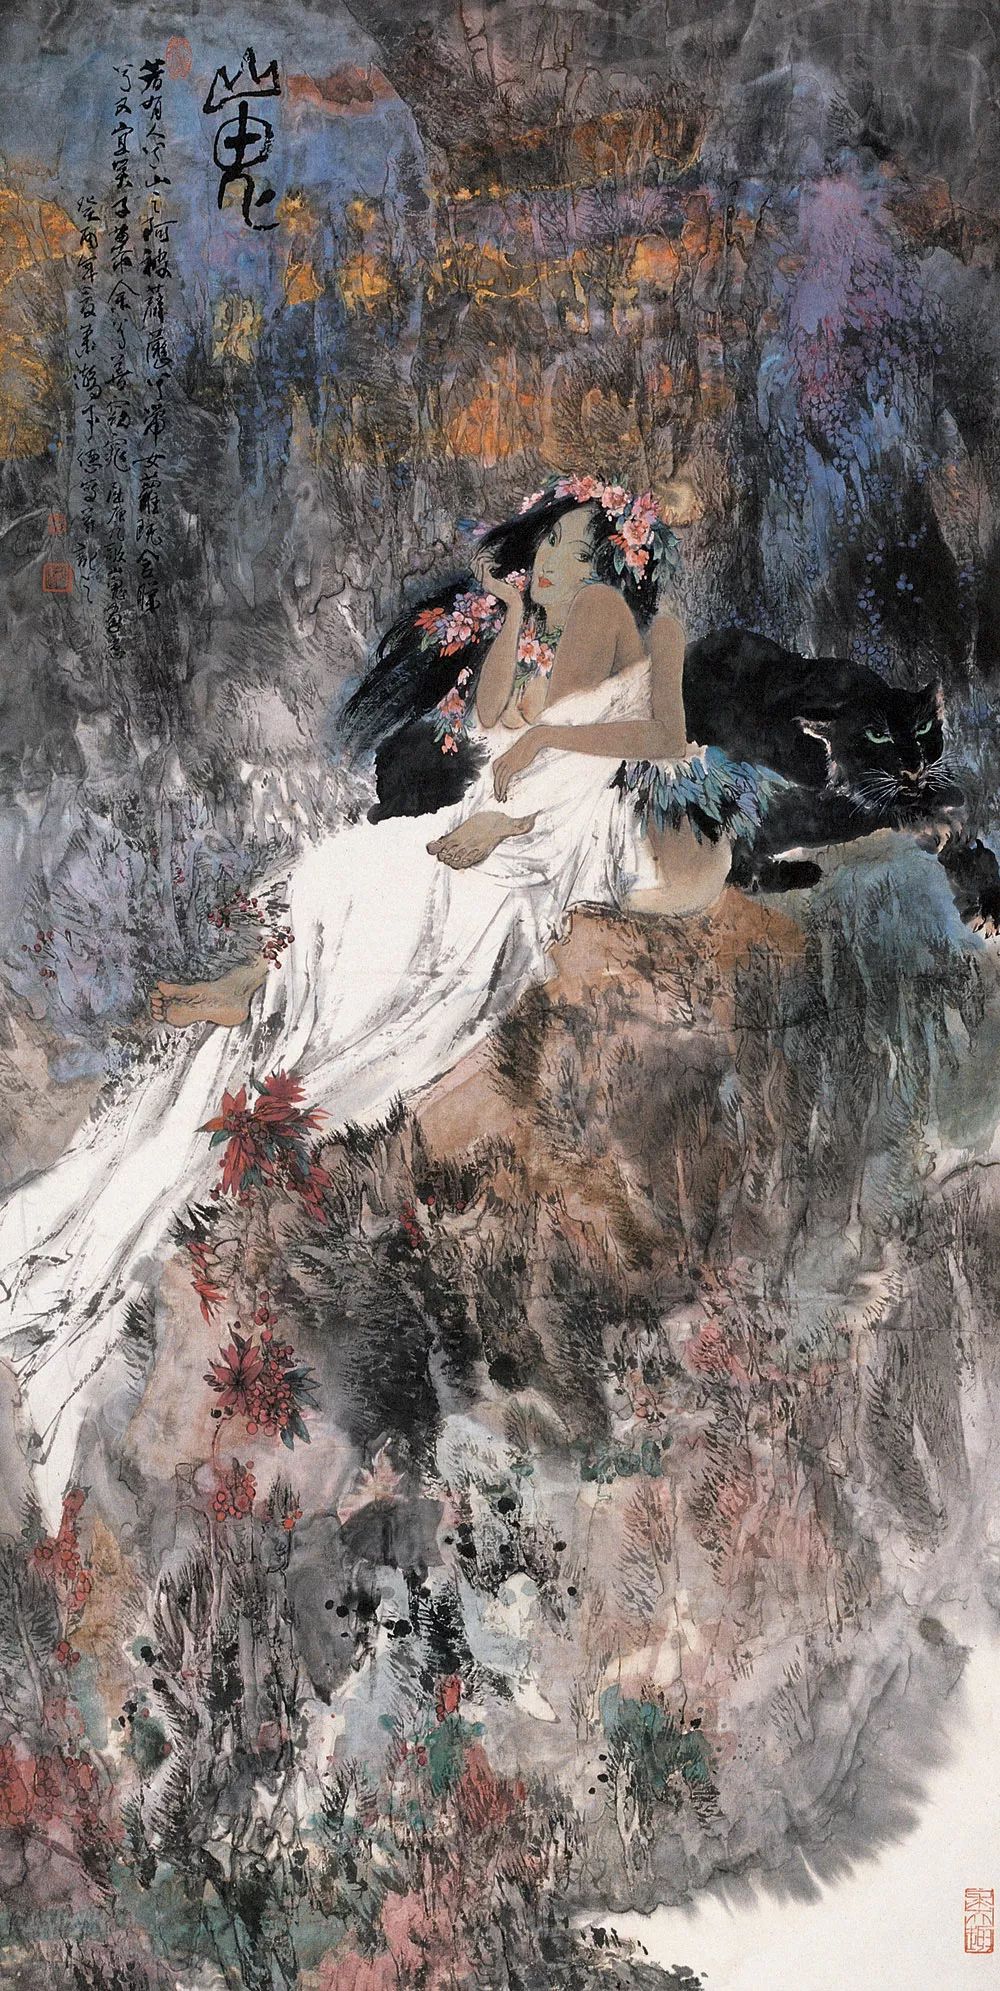 近现代画家笔下的中国神话第一美女——山鬼